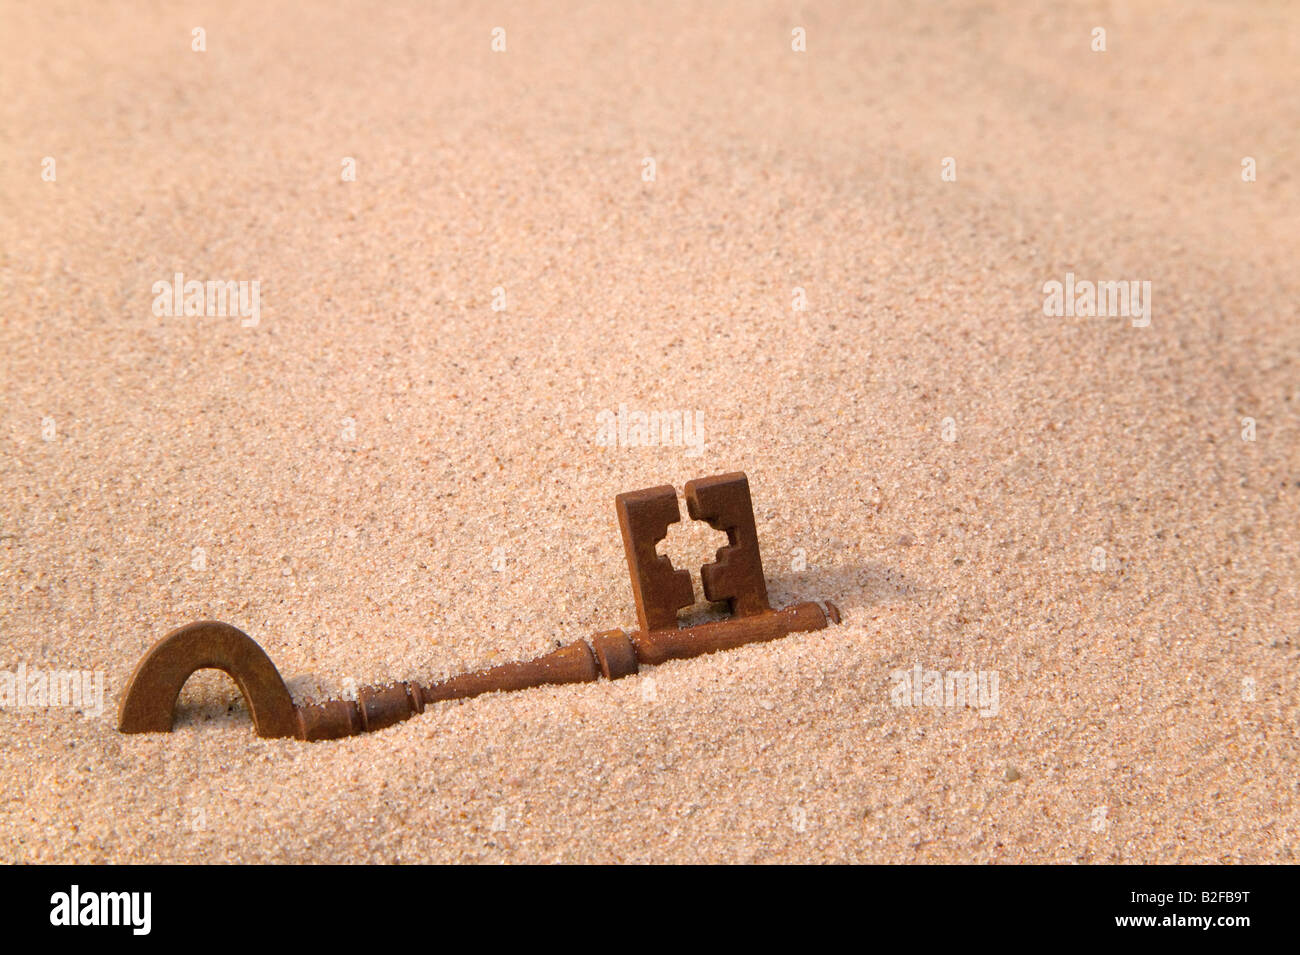 Une vieille clé rouillée partie enterrée dans le sable Banque D'Images